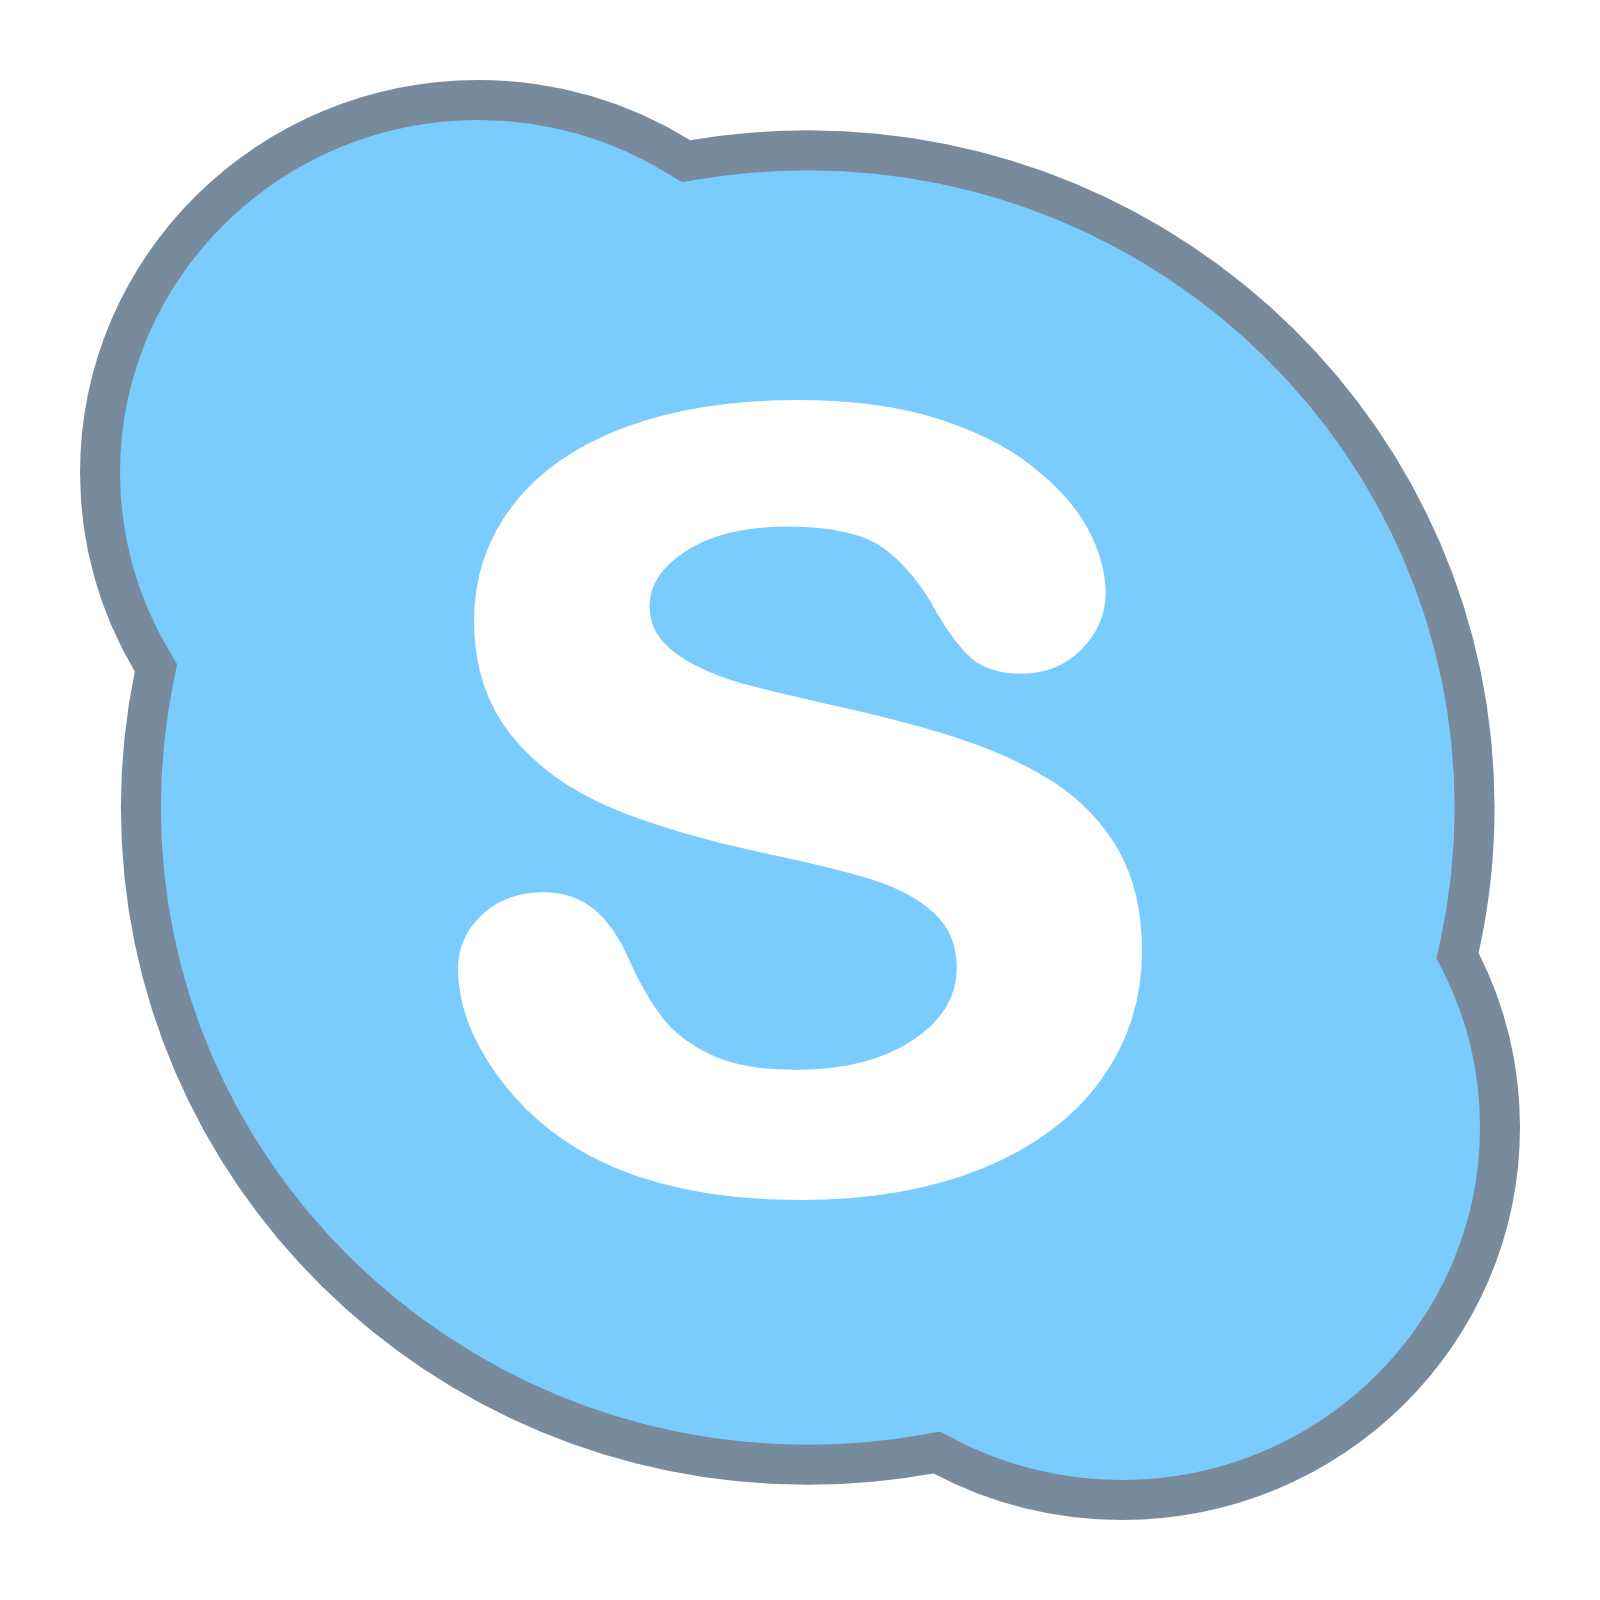 skype logo, skype icon download icons #19905